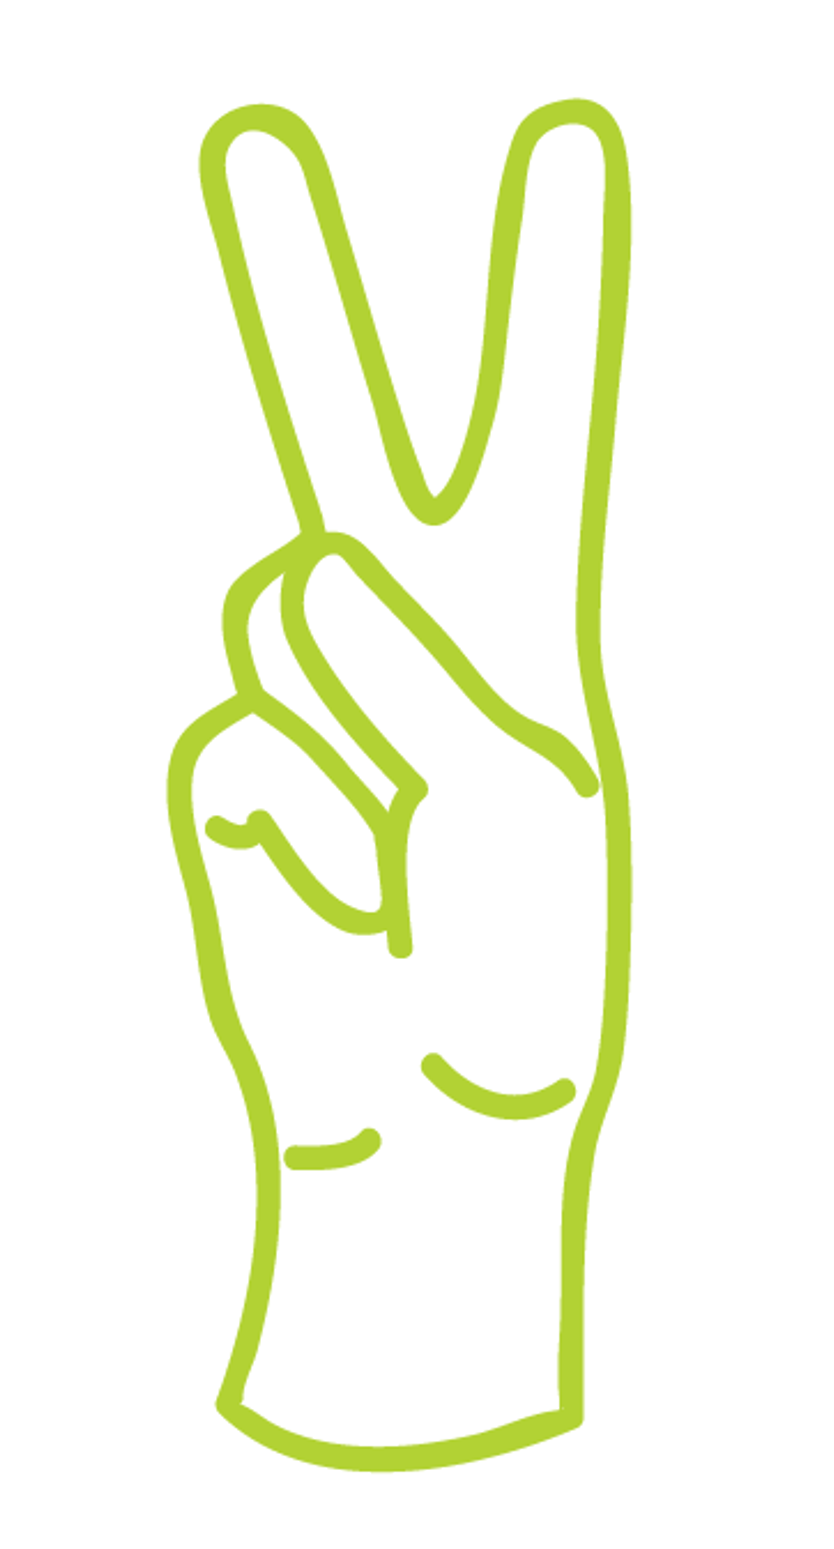 The letter V in ASL